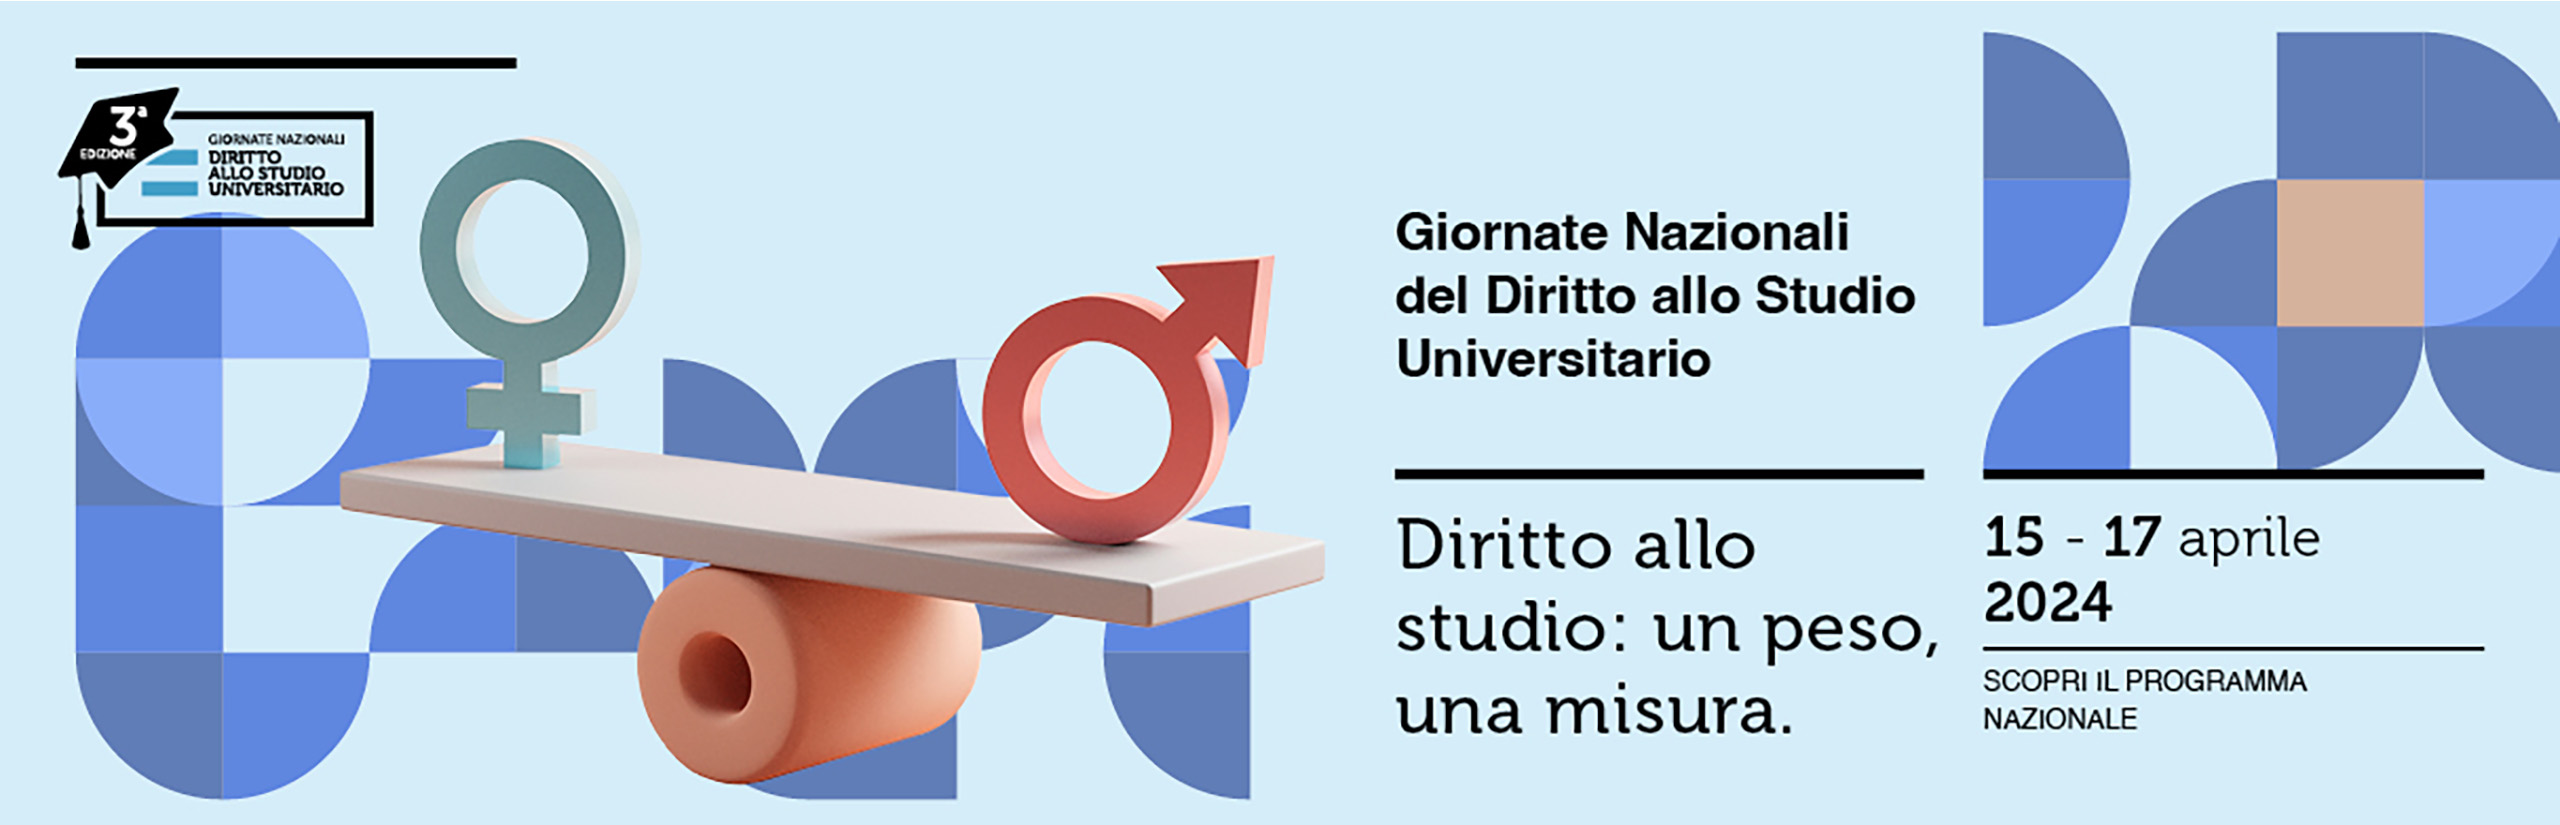 banner Giornate nazionali Diritto allo Studio Universitario 2024